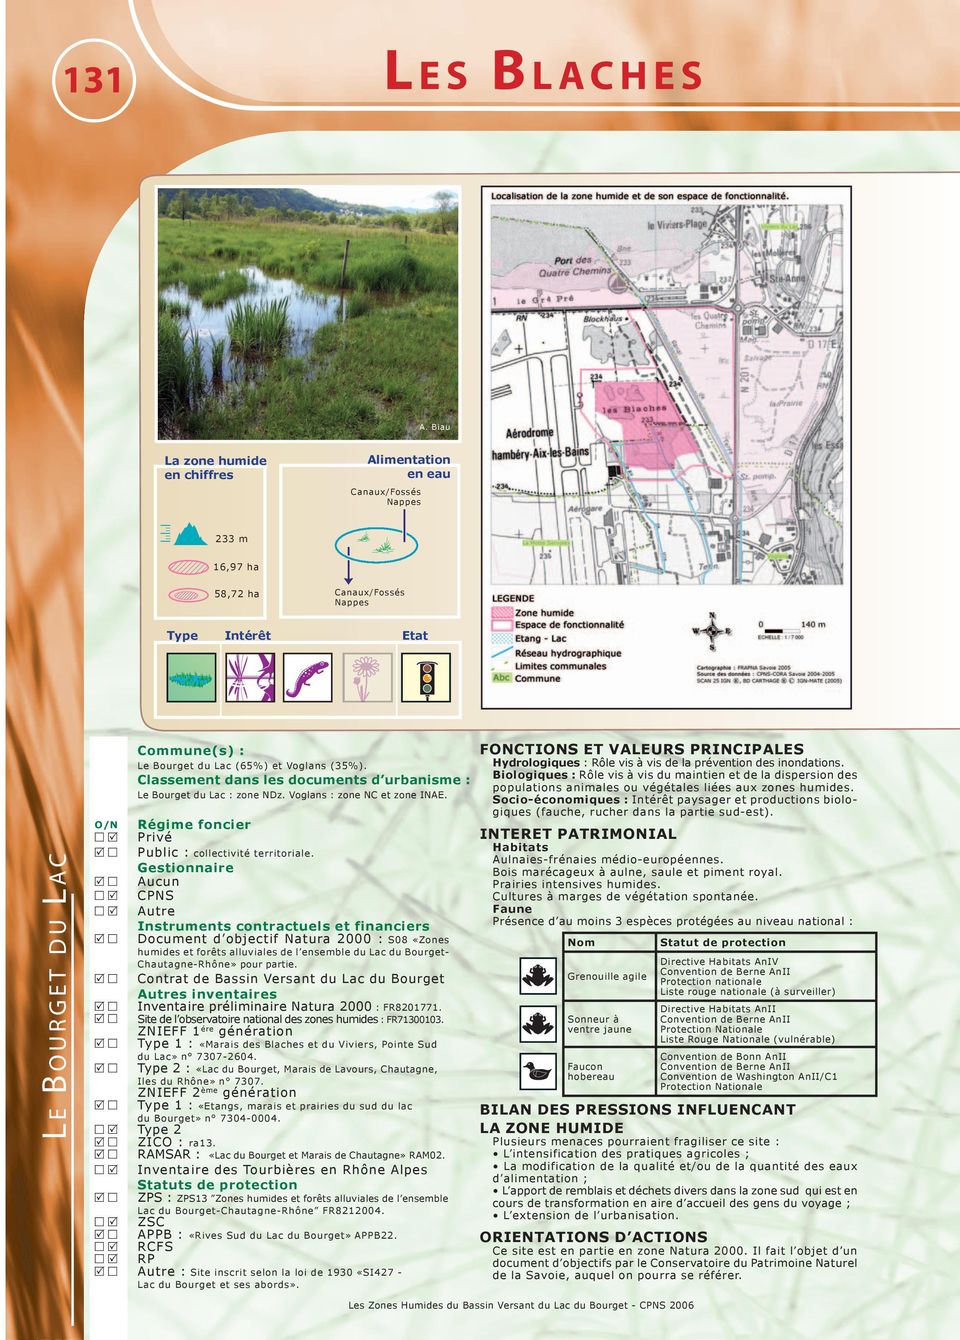 Aucun CPNS Autre Document d objectif Natura 2000 : S08 «Zones humides et forêts alluviales de l ensemble du Lac du Bourget- Chautagne-Rhône» pour partie.